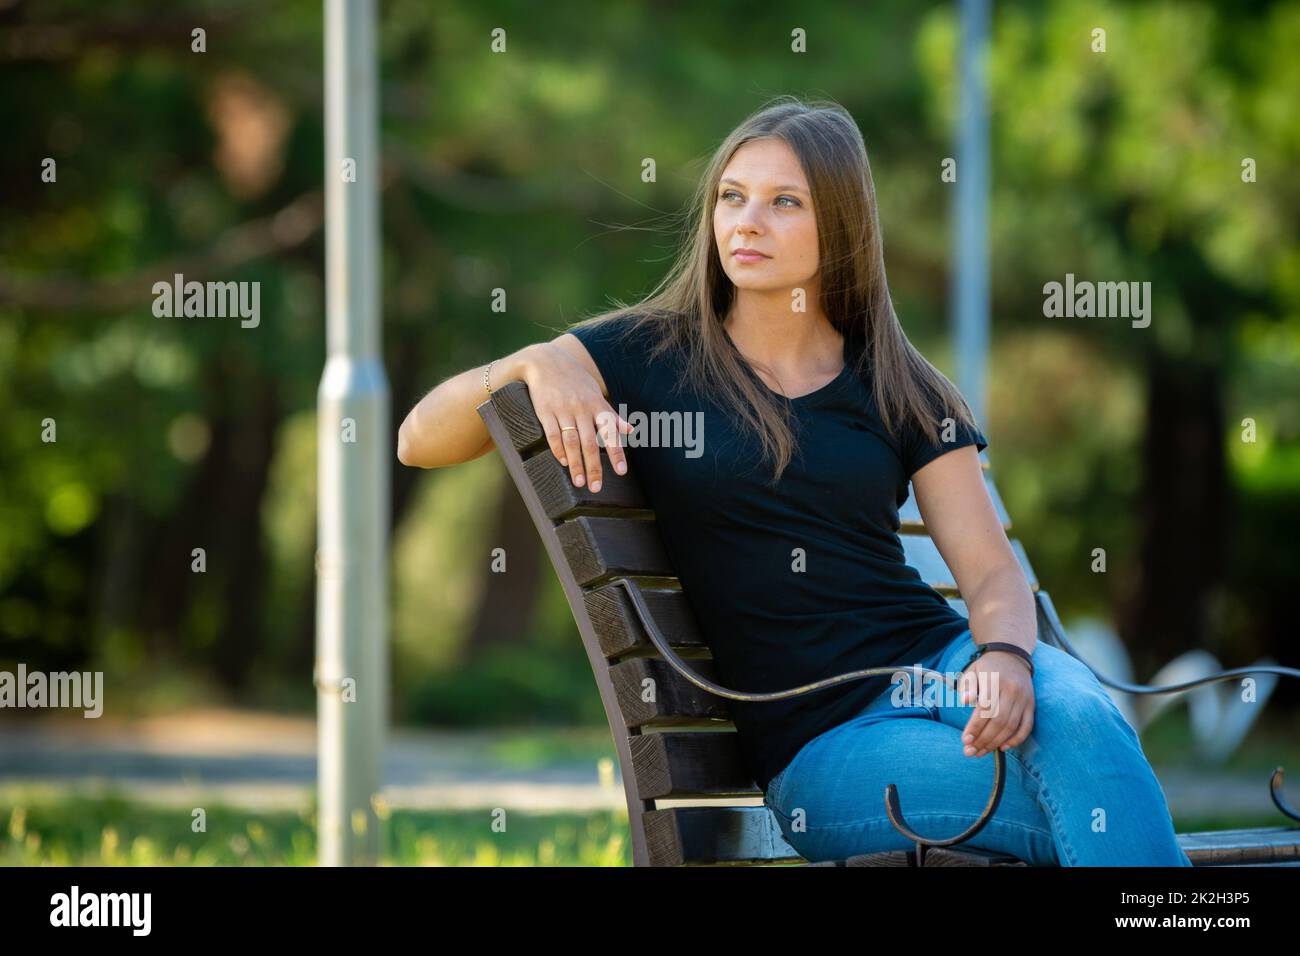 Ein schönes Mädchen in legerer Kleidung sitzt auf einer Bank in einem schönen grünen Park Stockfoto